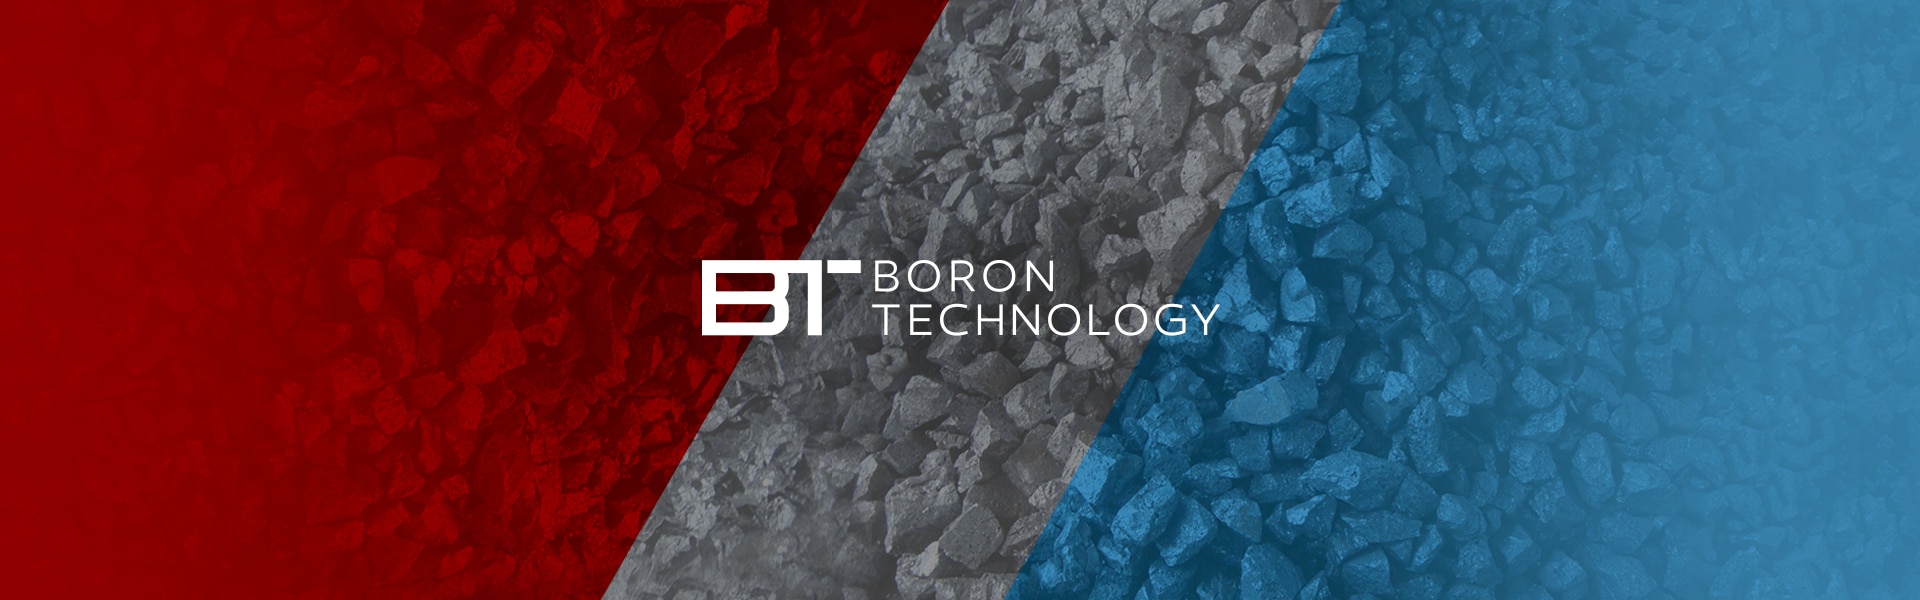 BT Boron Technology